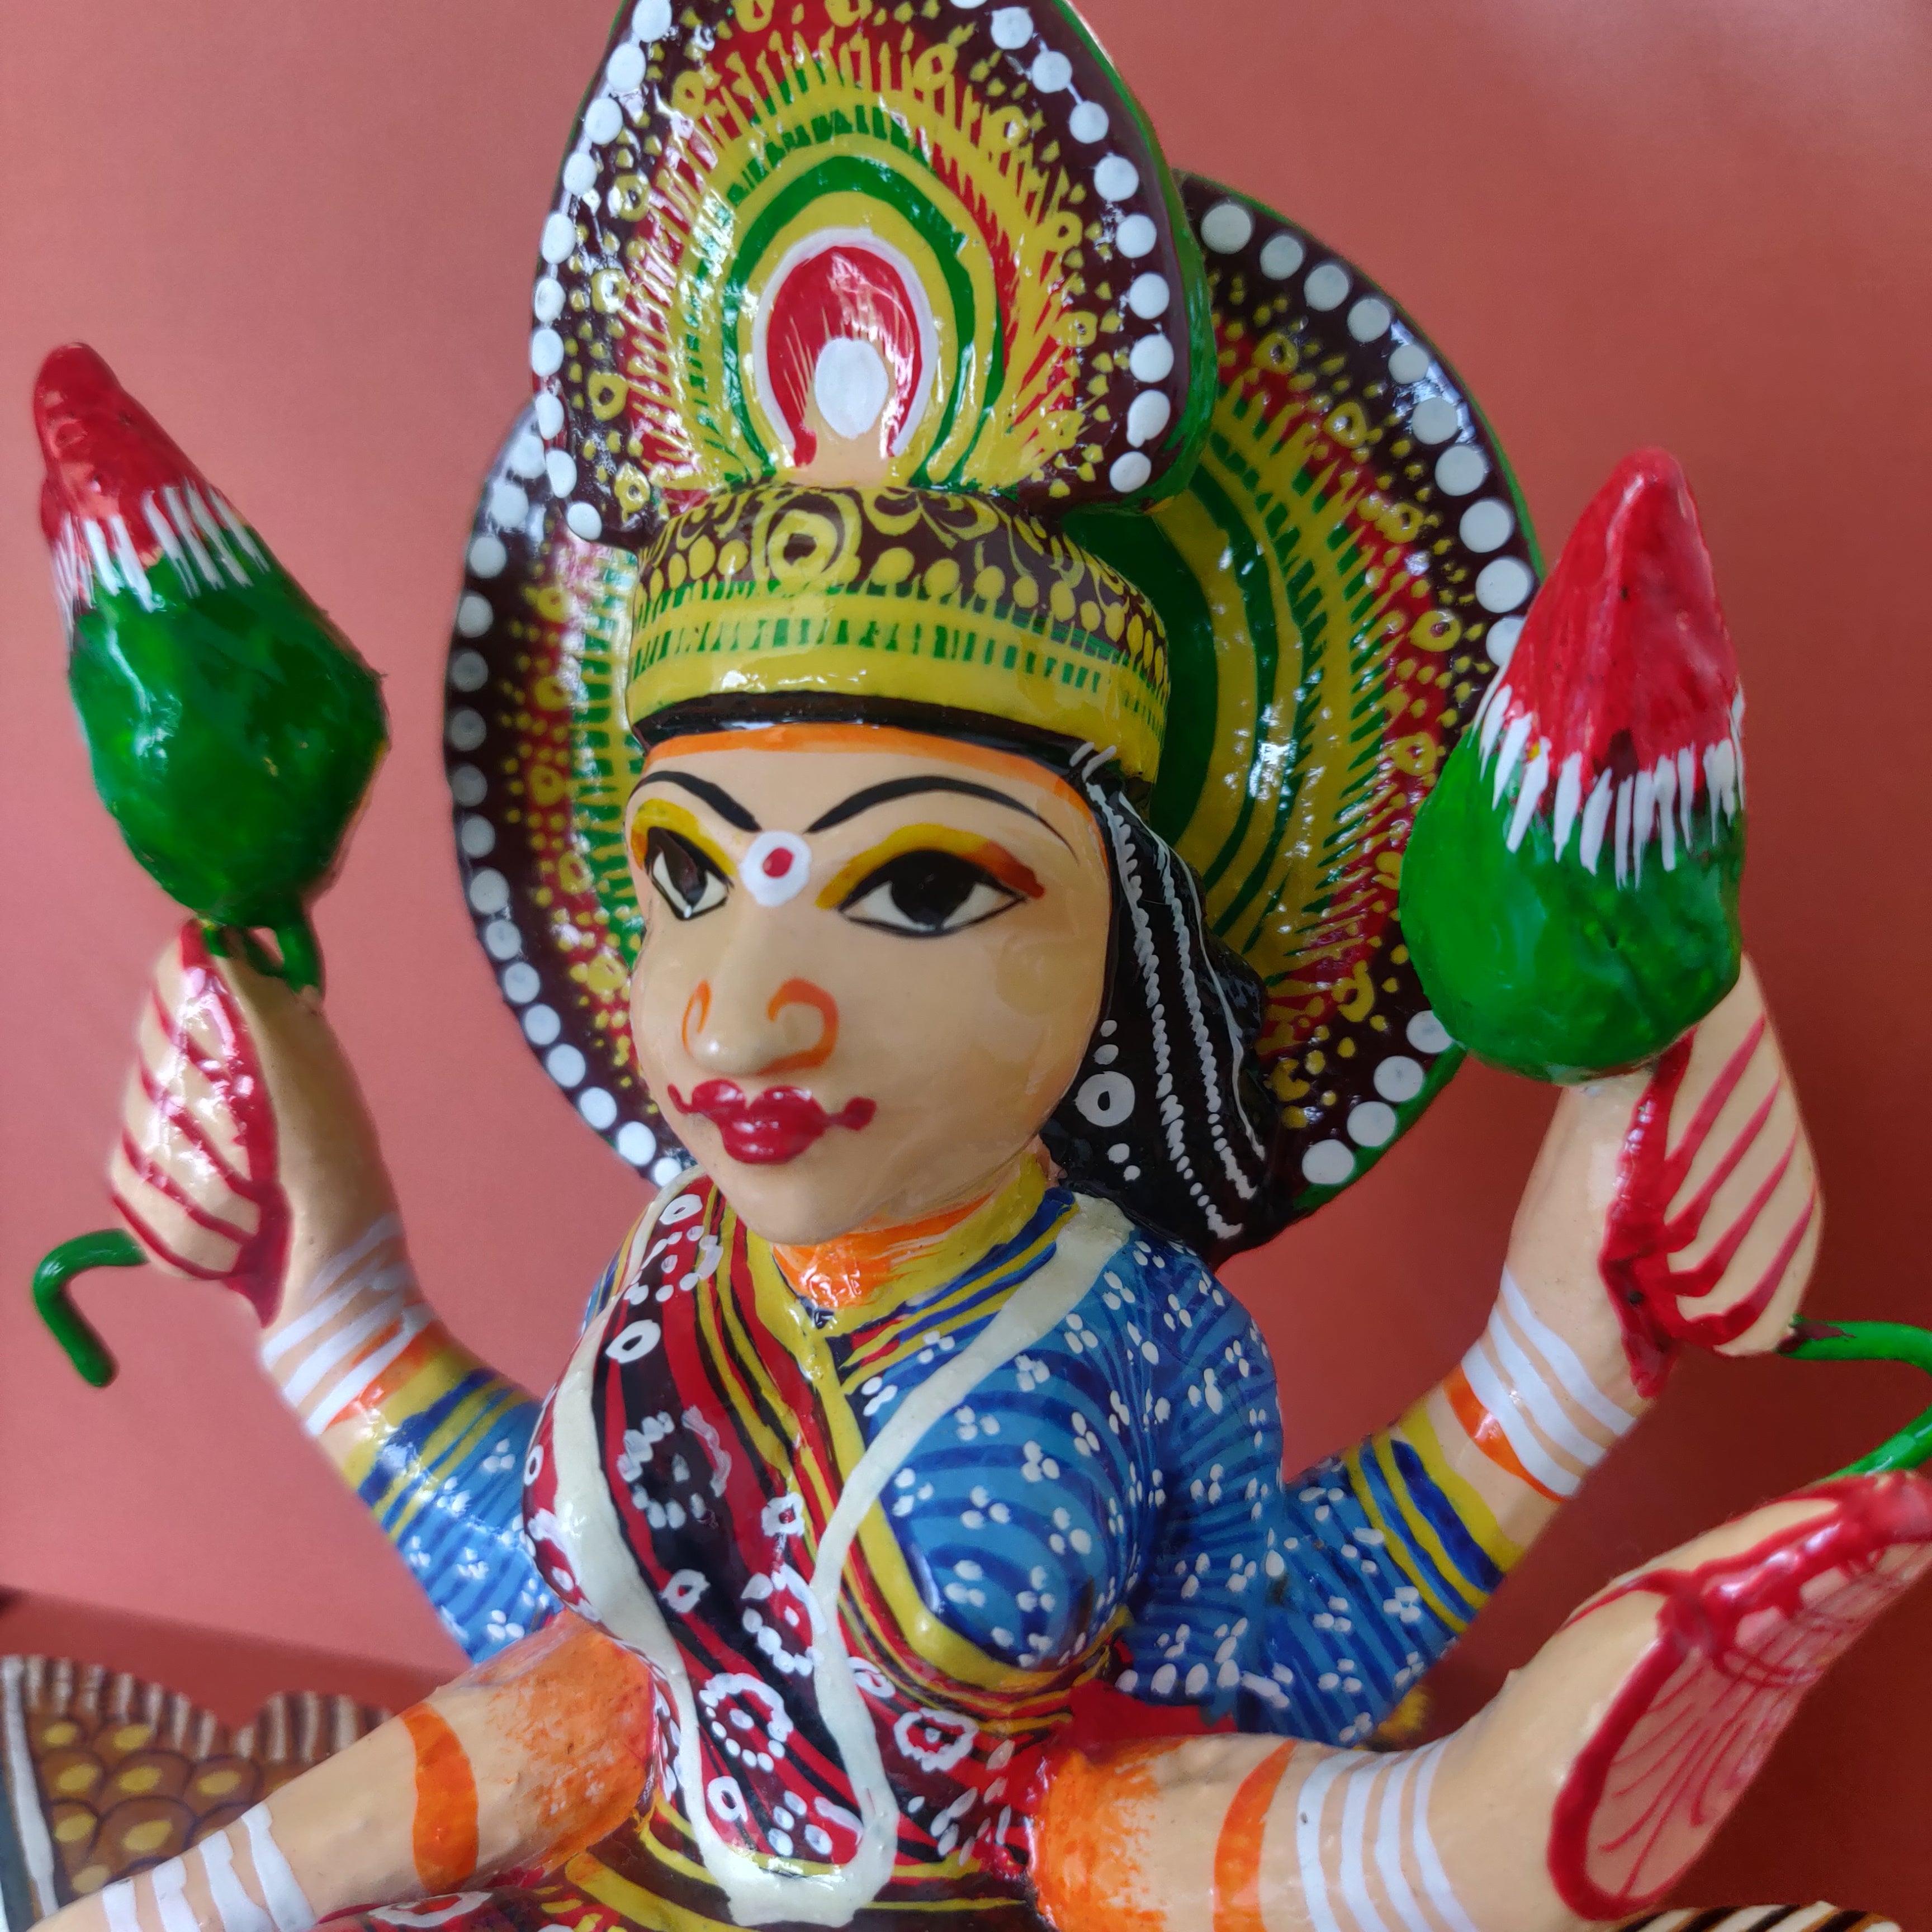 Kaisori Varanasi dolls - Goddesss Lakshmi Kaisori